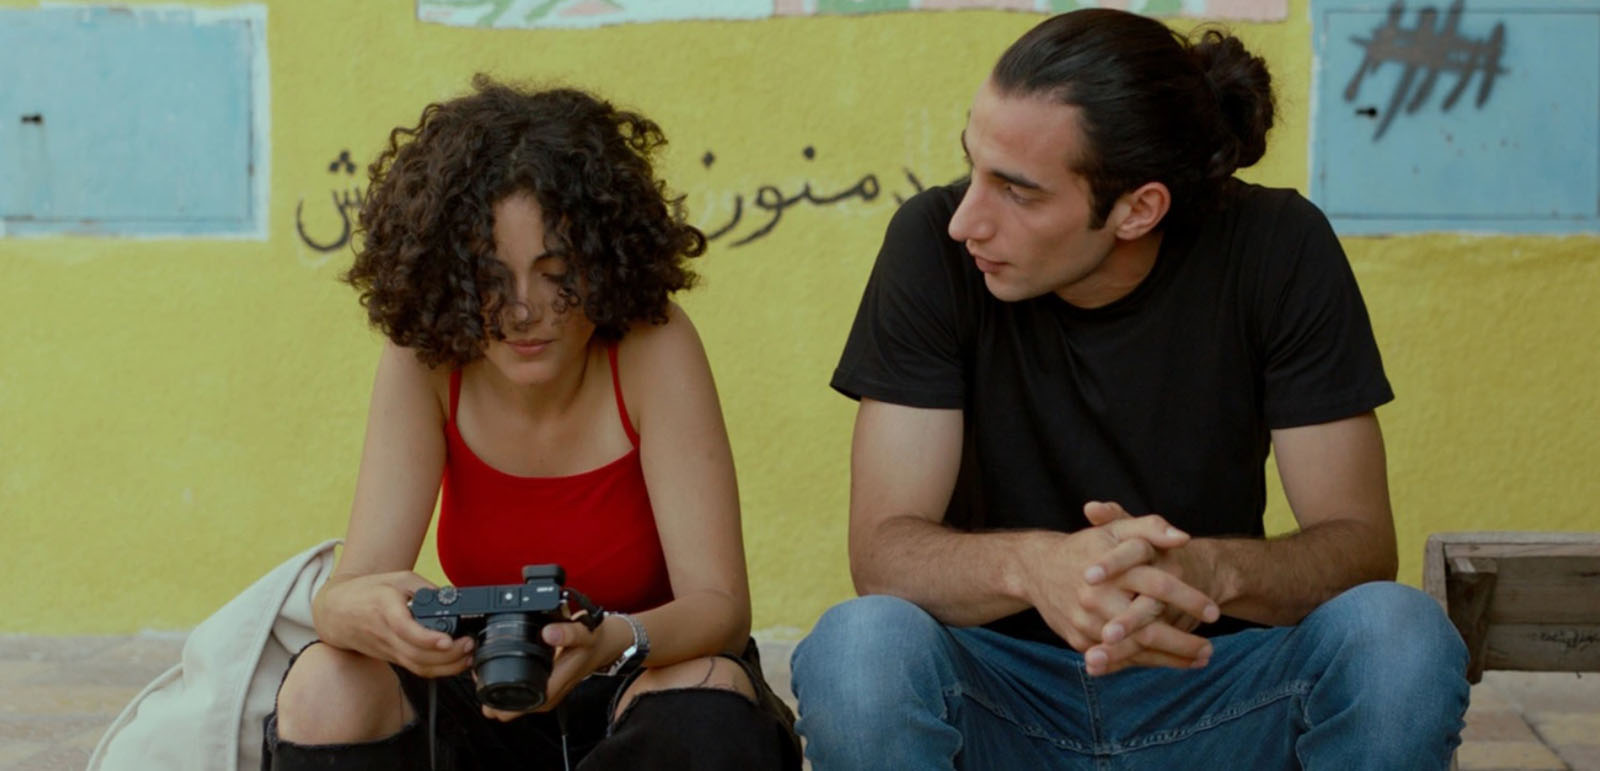 Film still from ‘Alum’ courtesy of Leeds Palestinian Film Festival